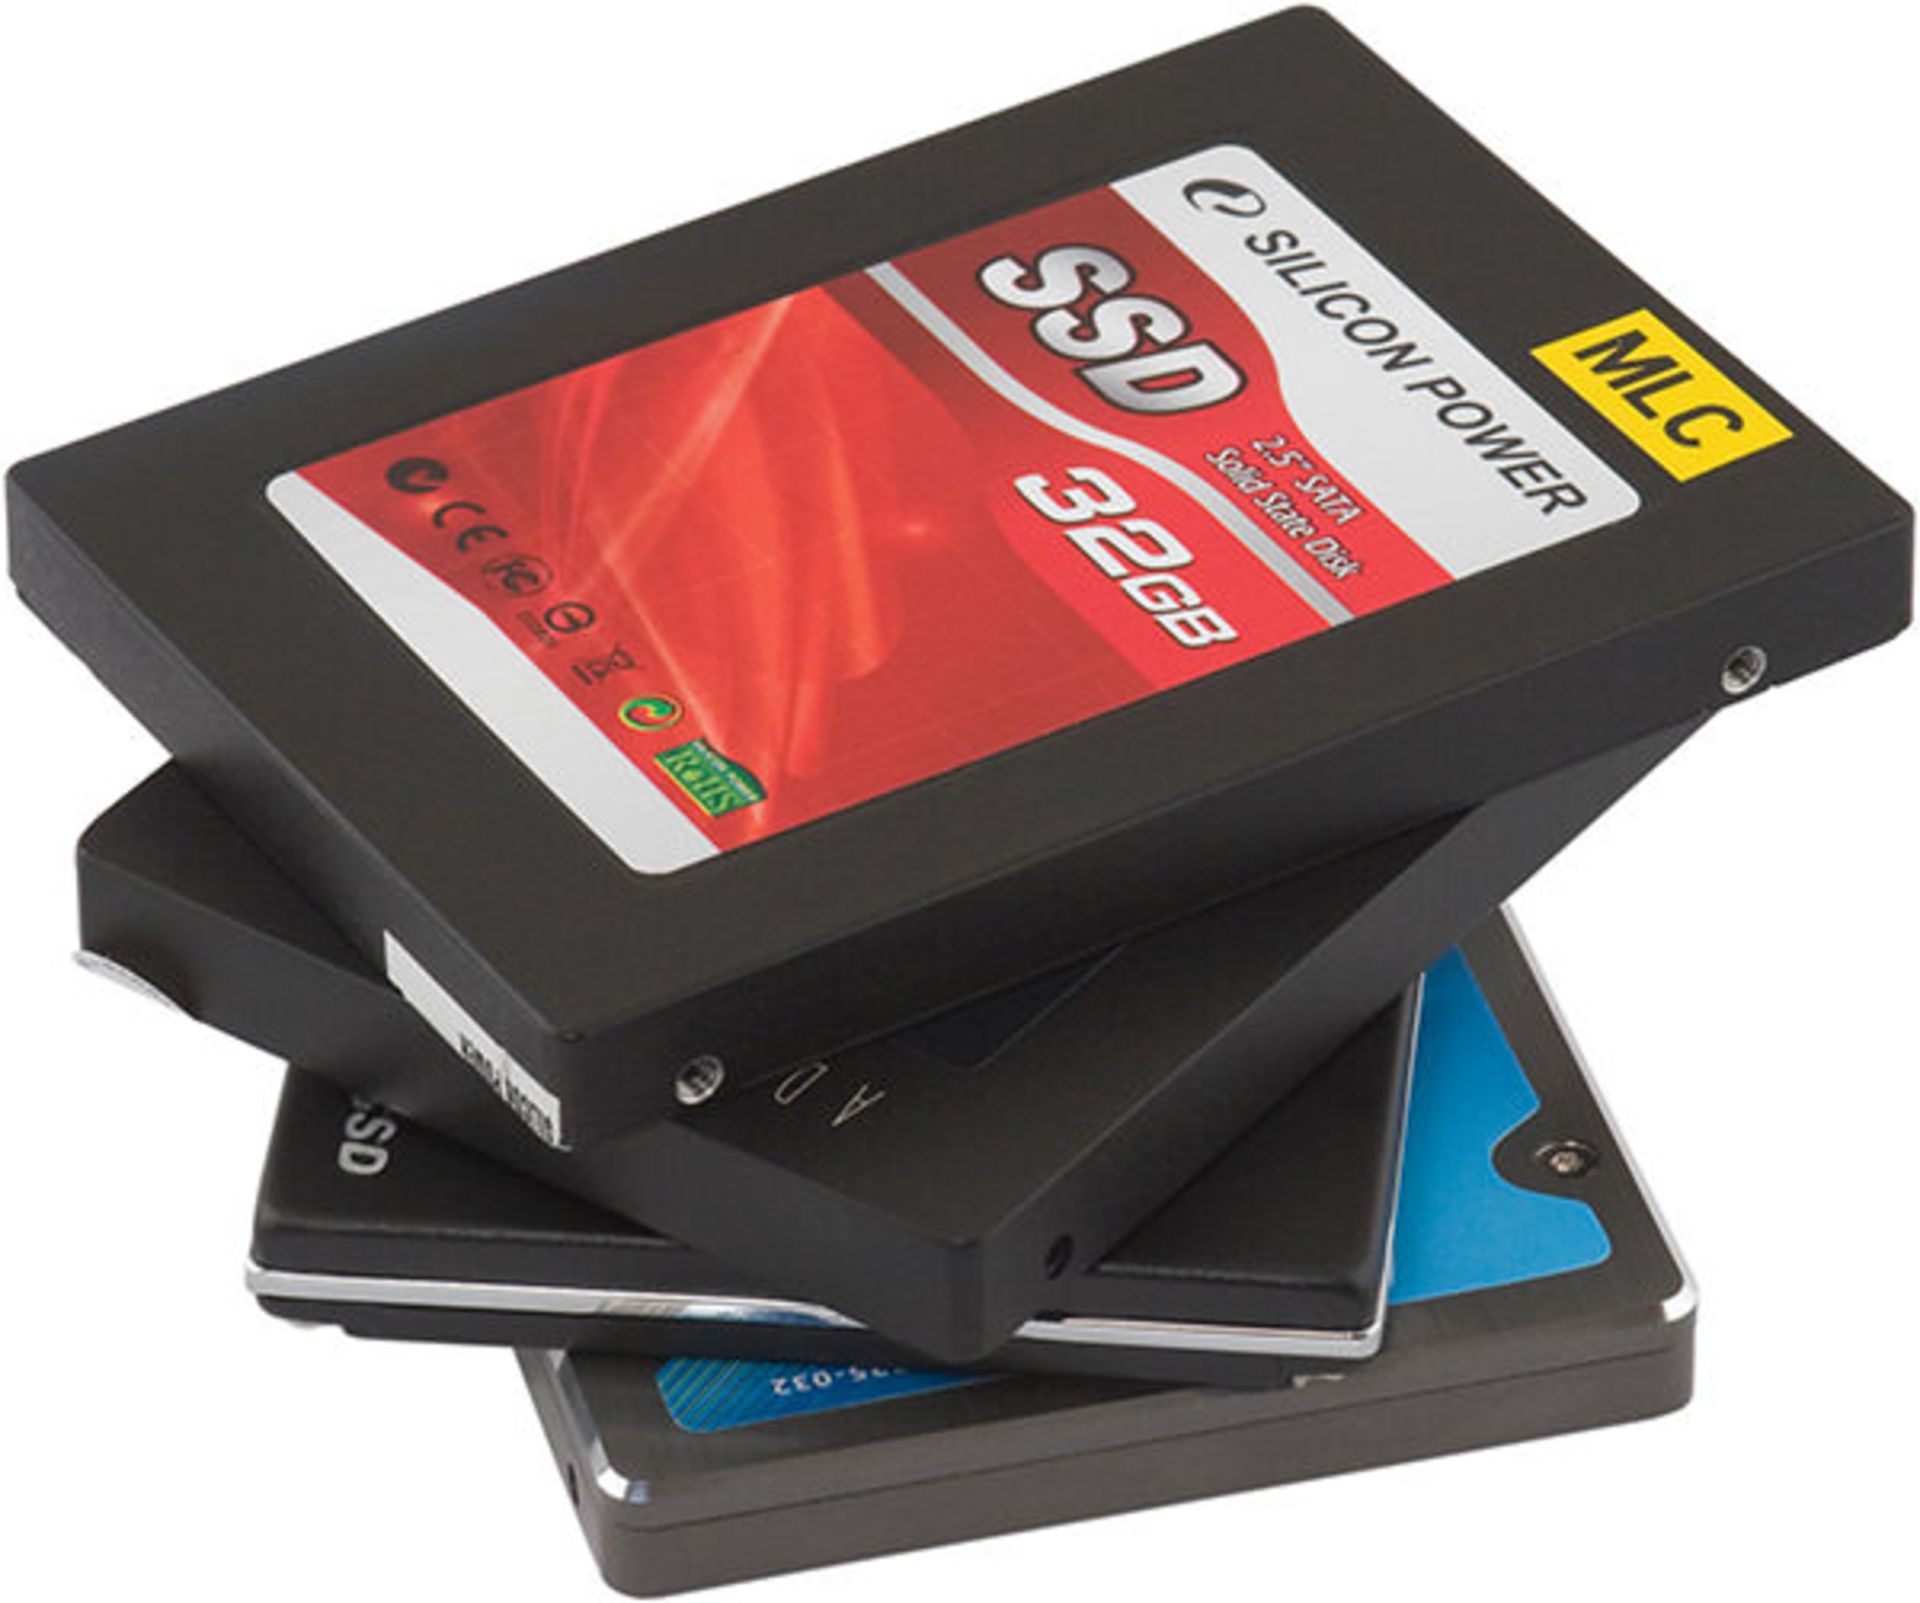 SSD-Fat32-or-NTFS-2